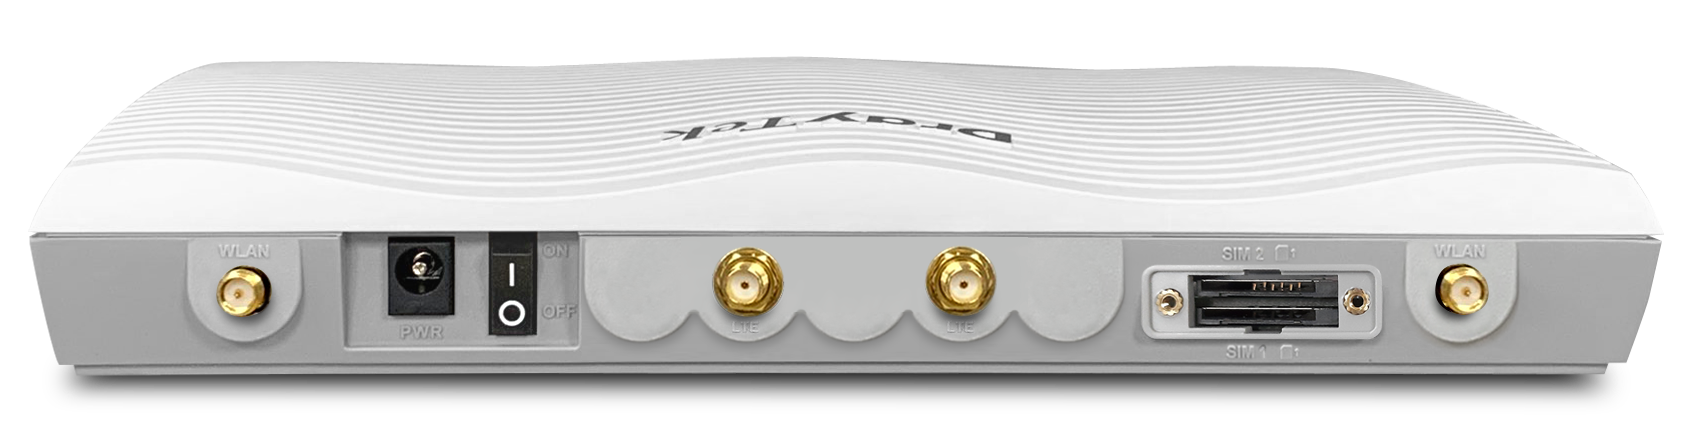 DrayTek Vigor V2865LAC-K AC1300 wireless VDSL router